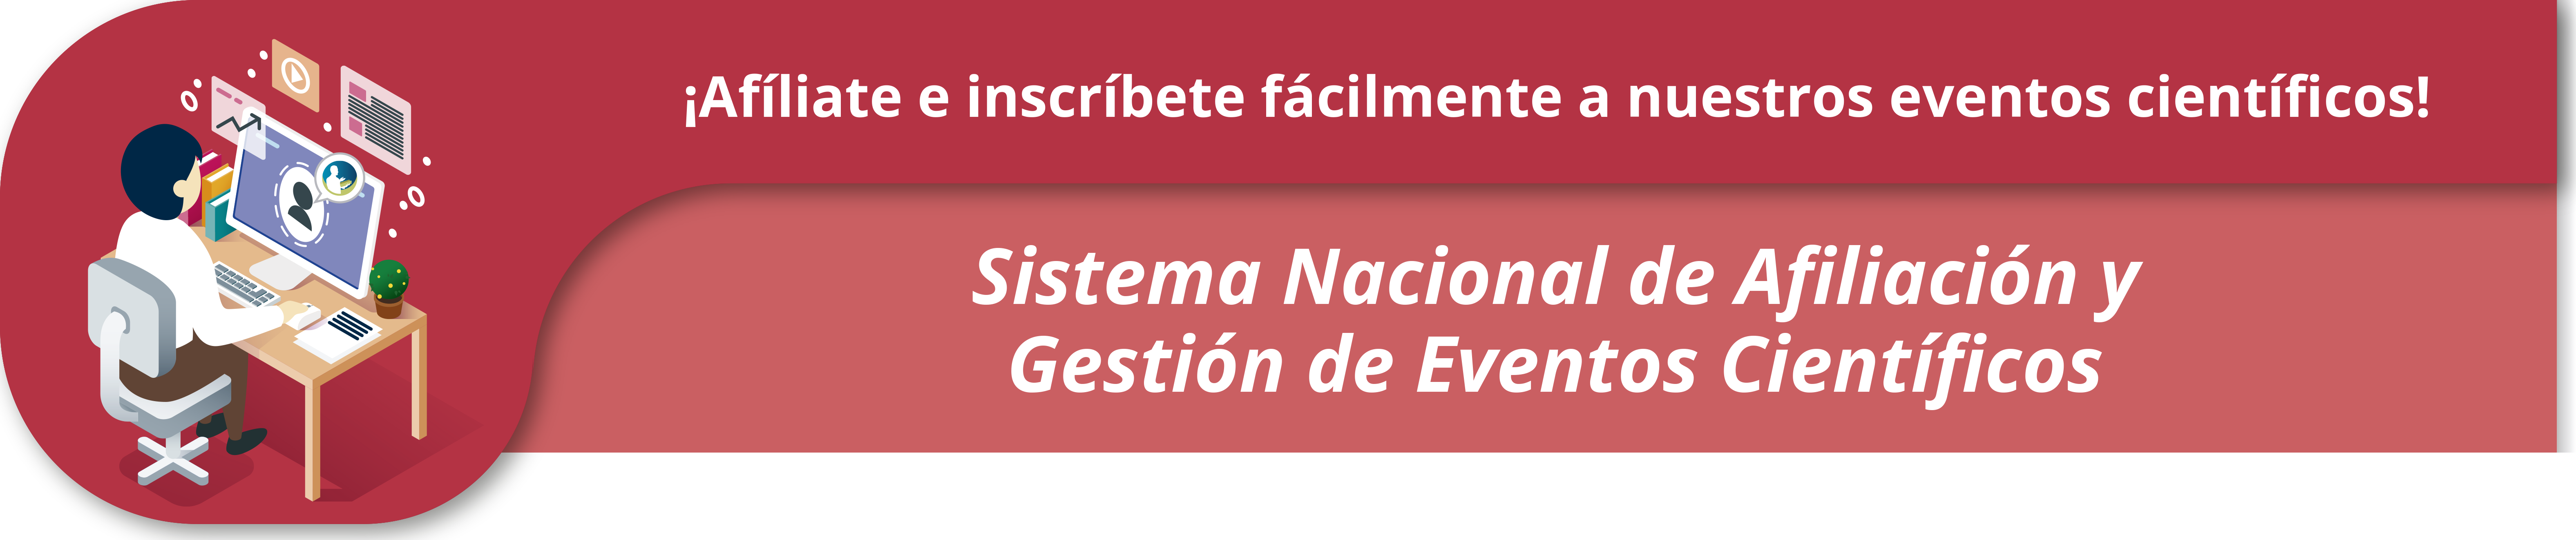 sistema_nacional_de_afiliacion_gestion_eventos_cientificos.png